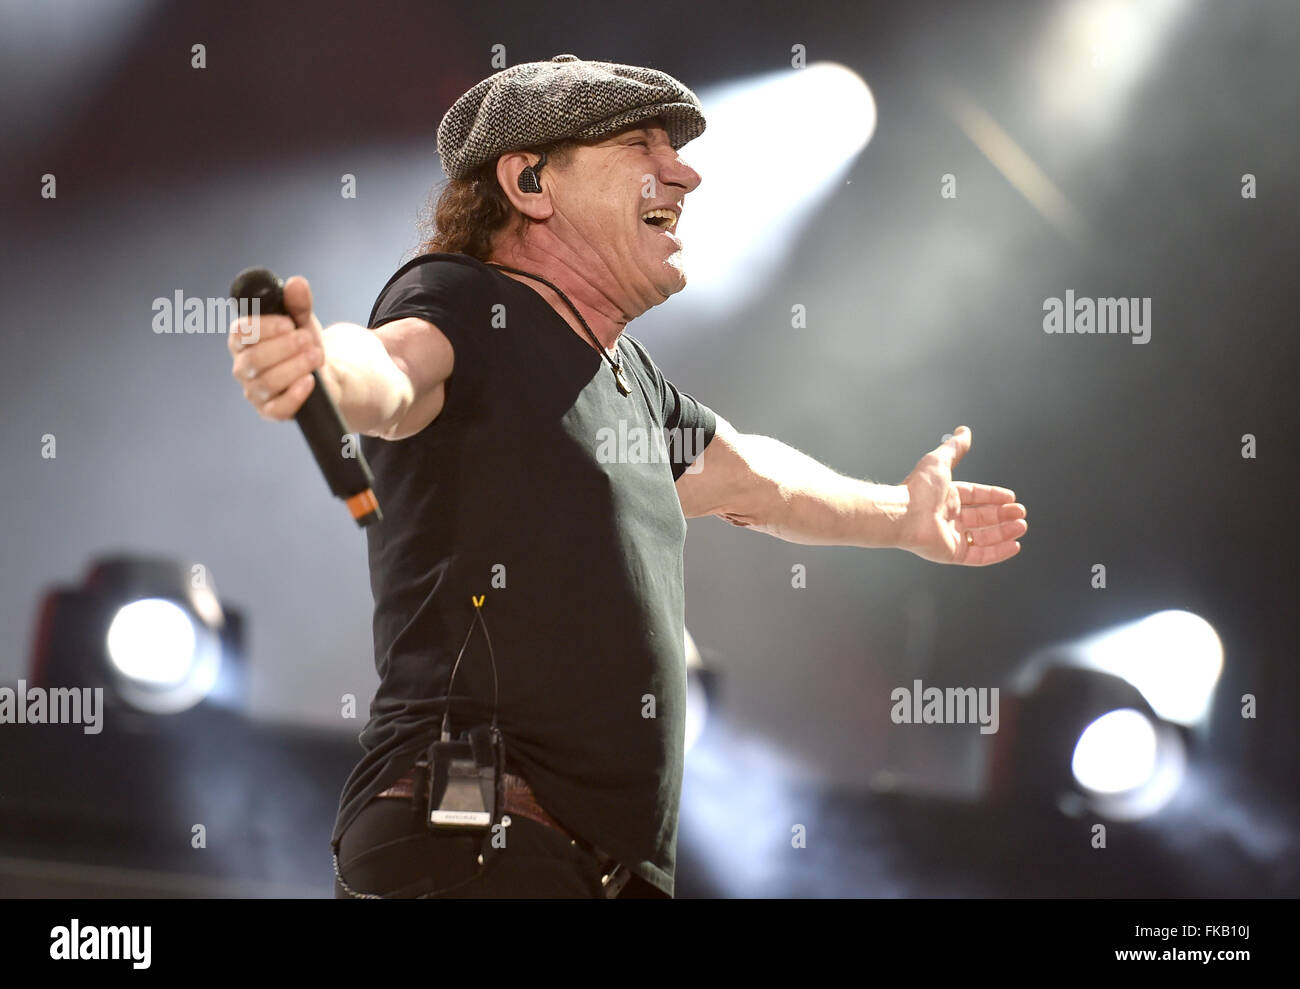 Sänger Brian Johnson der australischen Rockband AC/DC führt auf der Bühne  während eines Konzerts im Olympiastadion in Berlin, Deutschland, 25. Juni  2015. Foto: Britta Pedersen/dpa Stockfotografie - Alamy